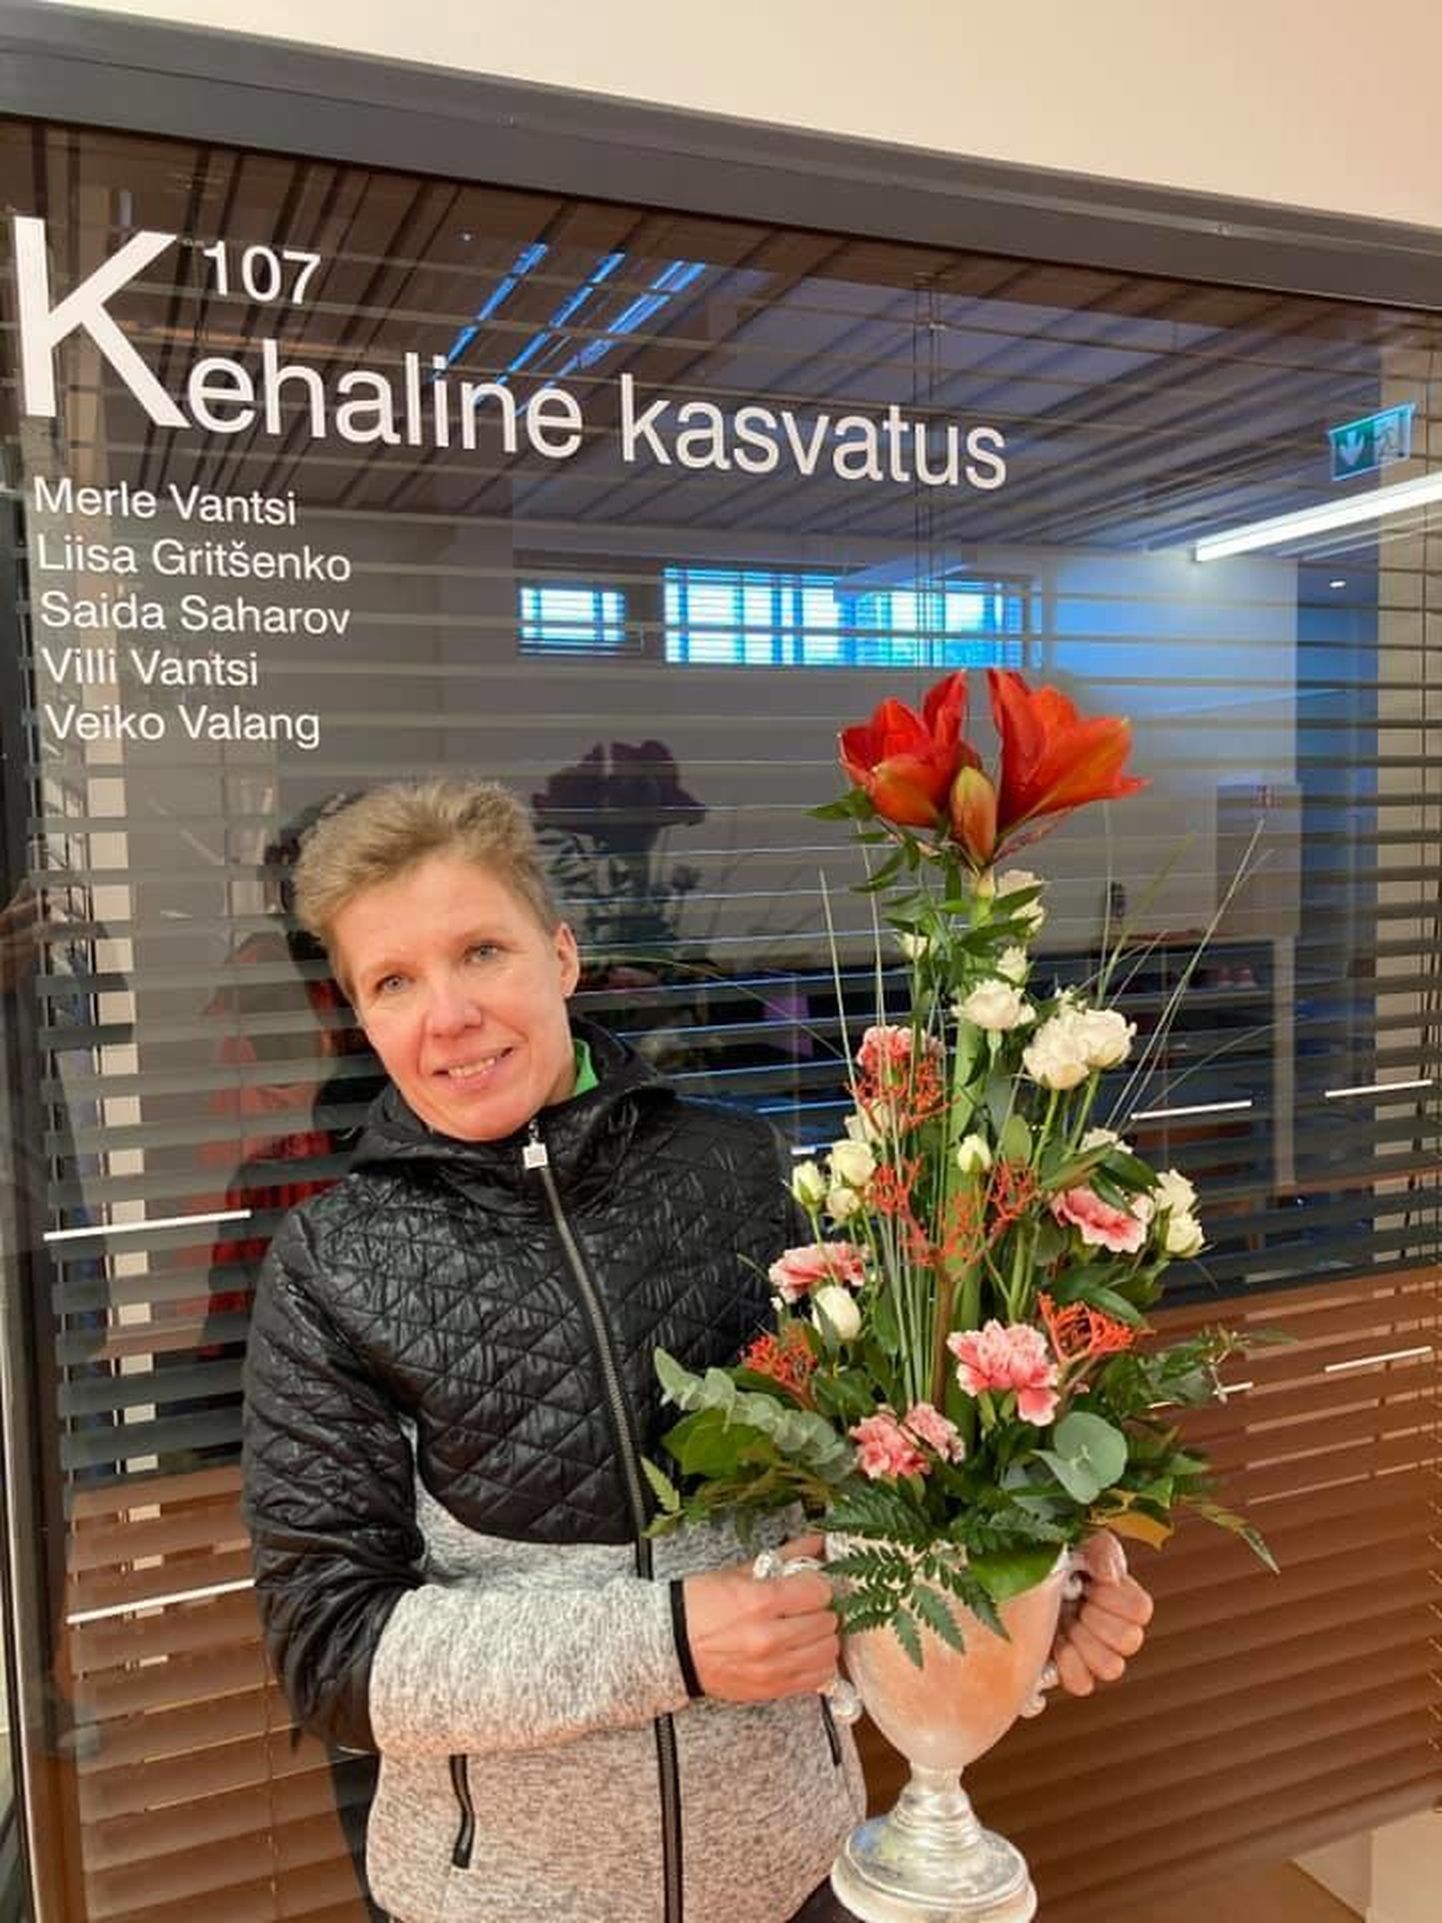 Türi põhikooli kehalise kasvatuse õpetaja Merle Vantsi kannab aasta spordisõbralikema õpetaja tiitlit, mille Eesti koolispordi liidu juhatus talle eile kätte andis.